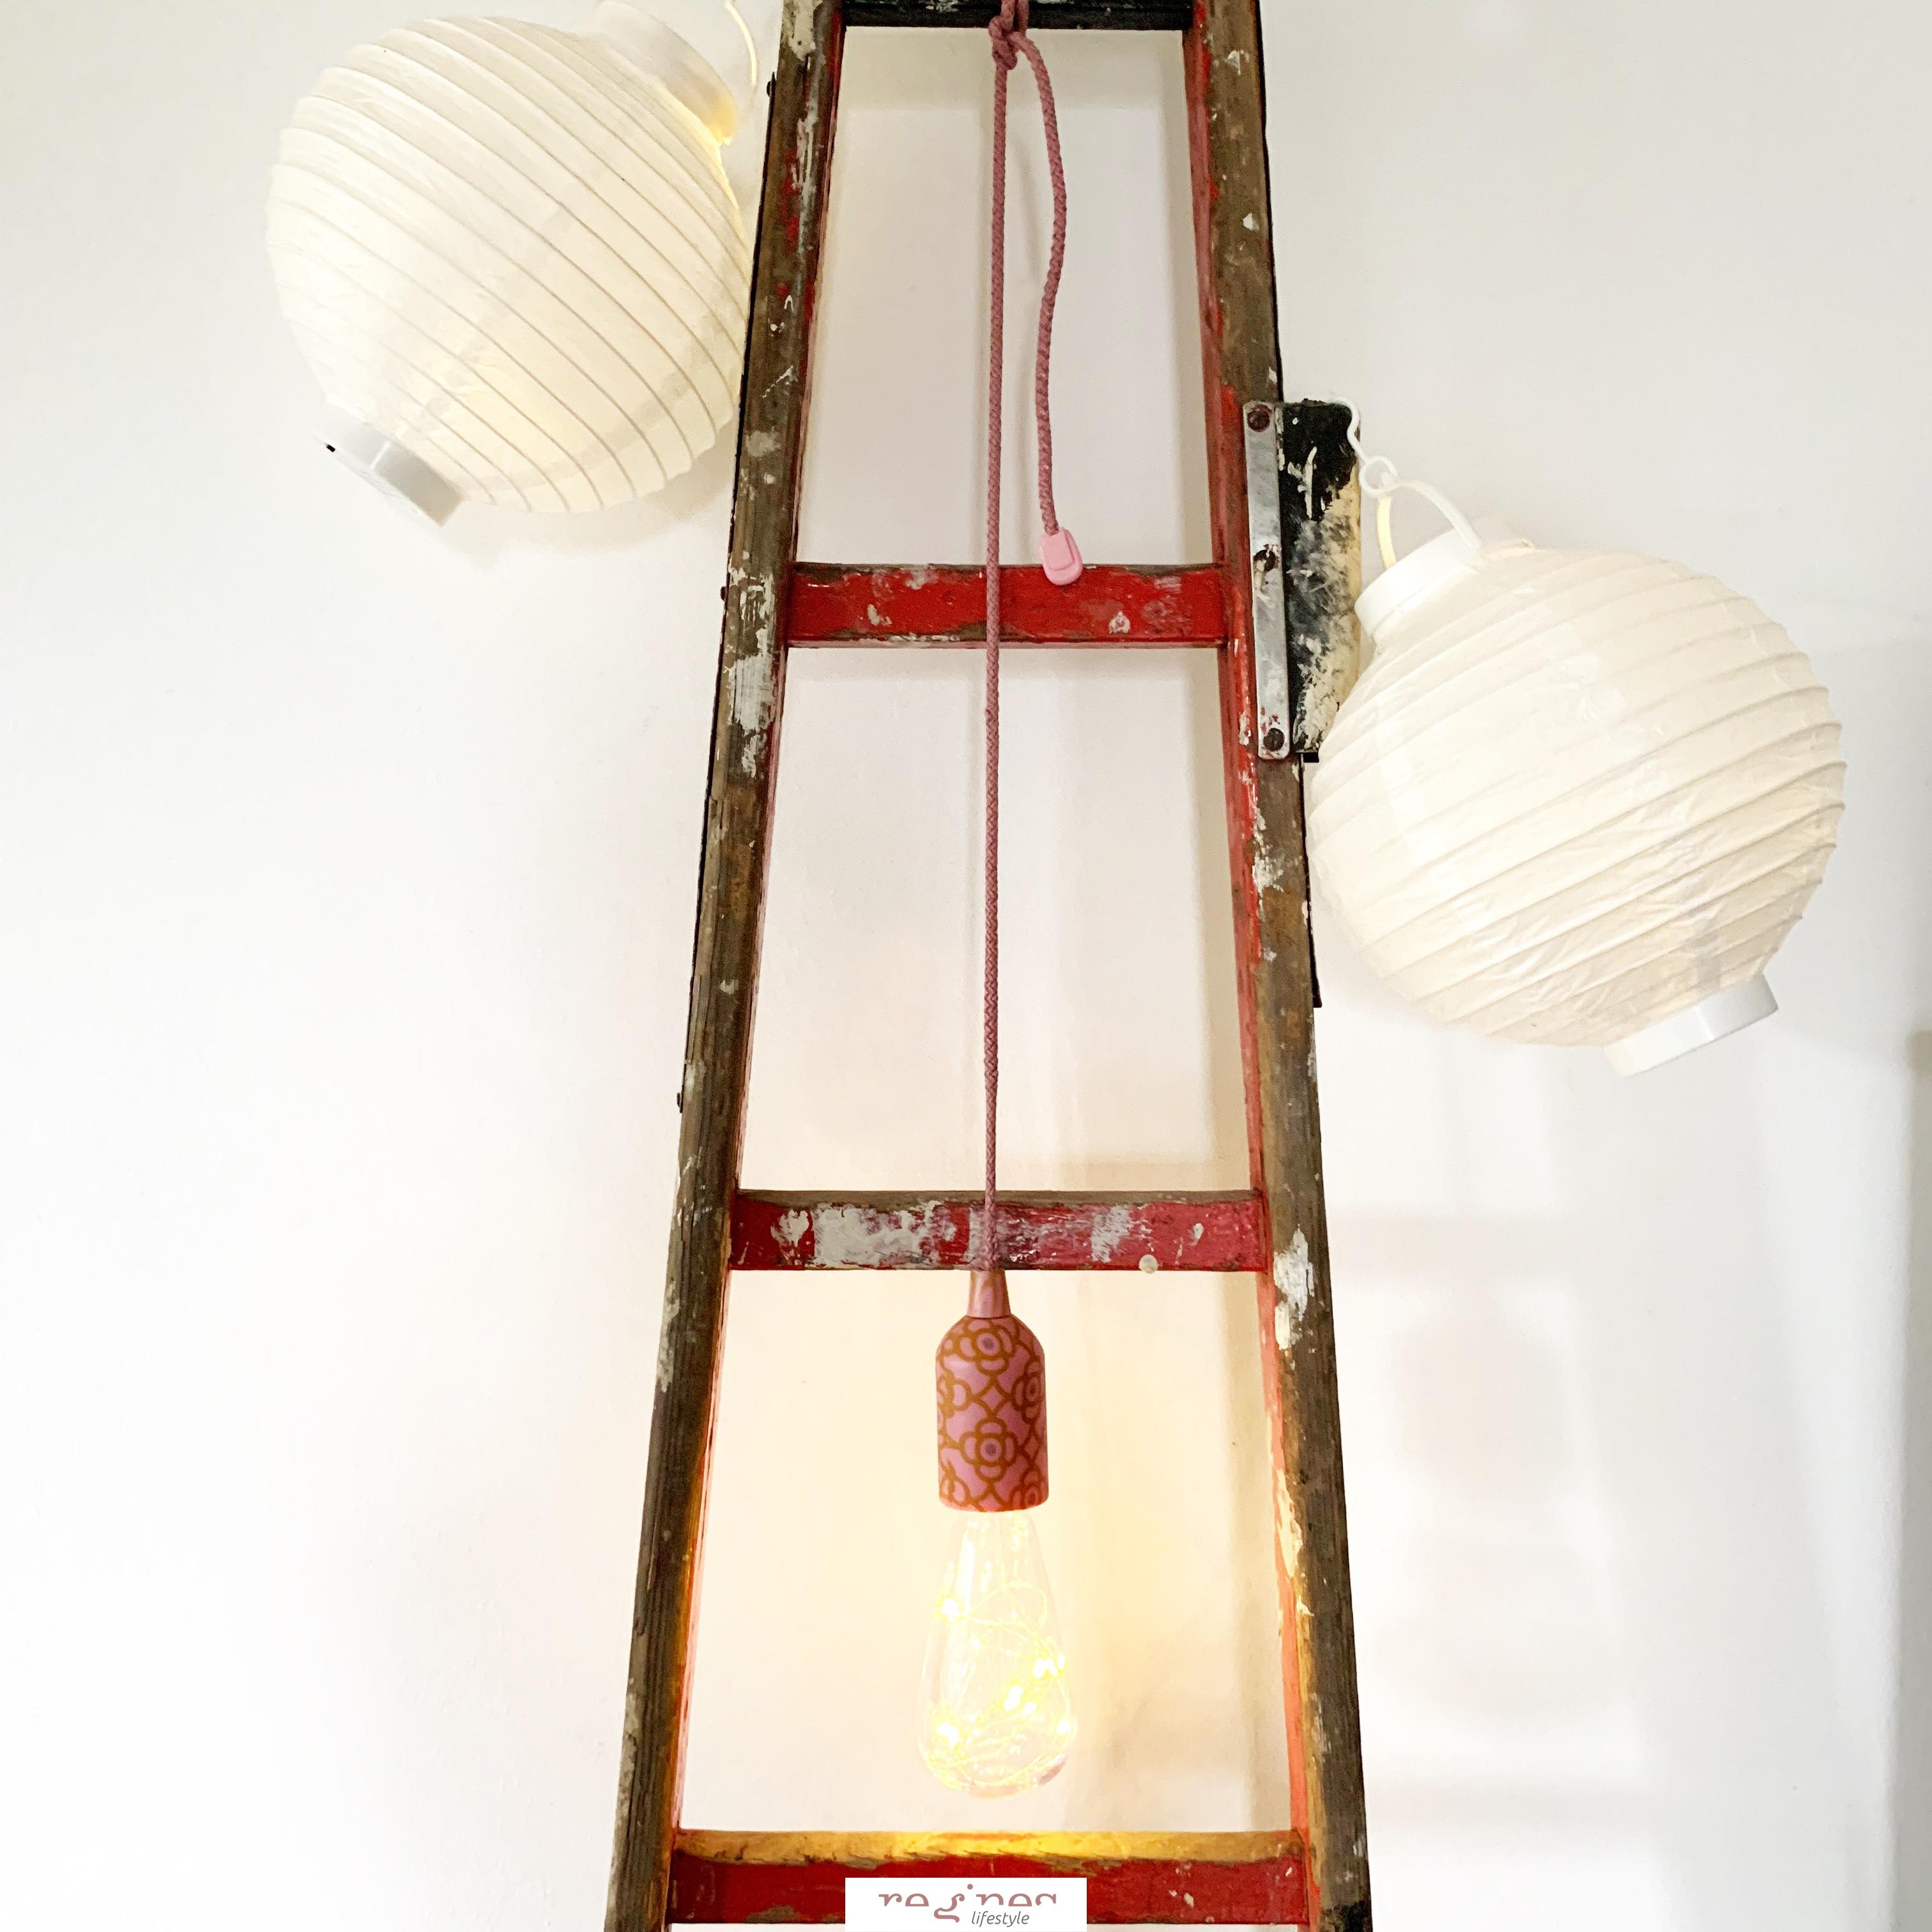 Seillampe und Lampions finden in unserem Wohnzimmer ein Zuhause ...

#wohndeko #lampen #leiter #gemütich #licht #wohnen